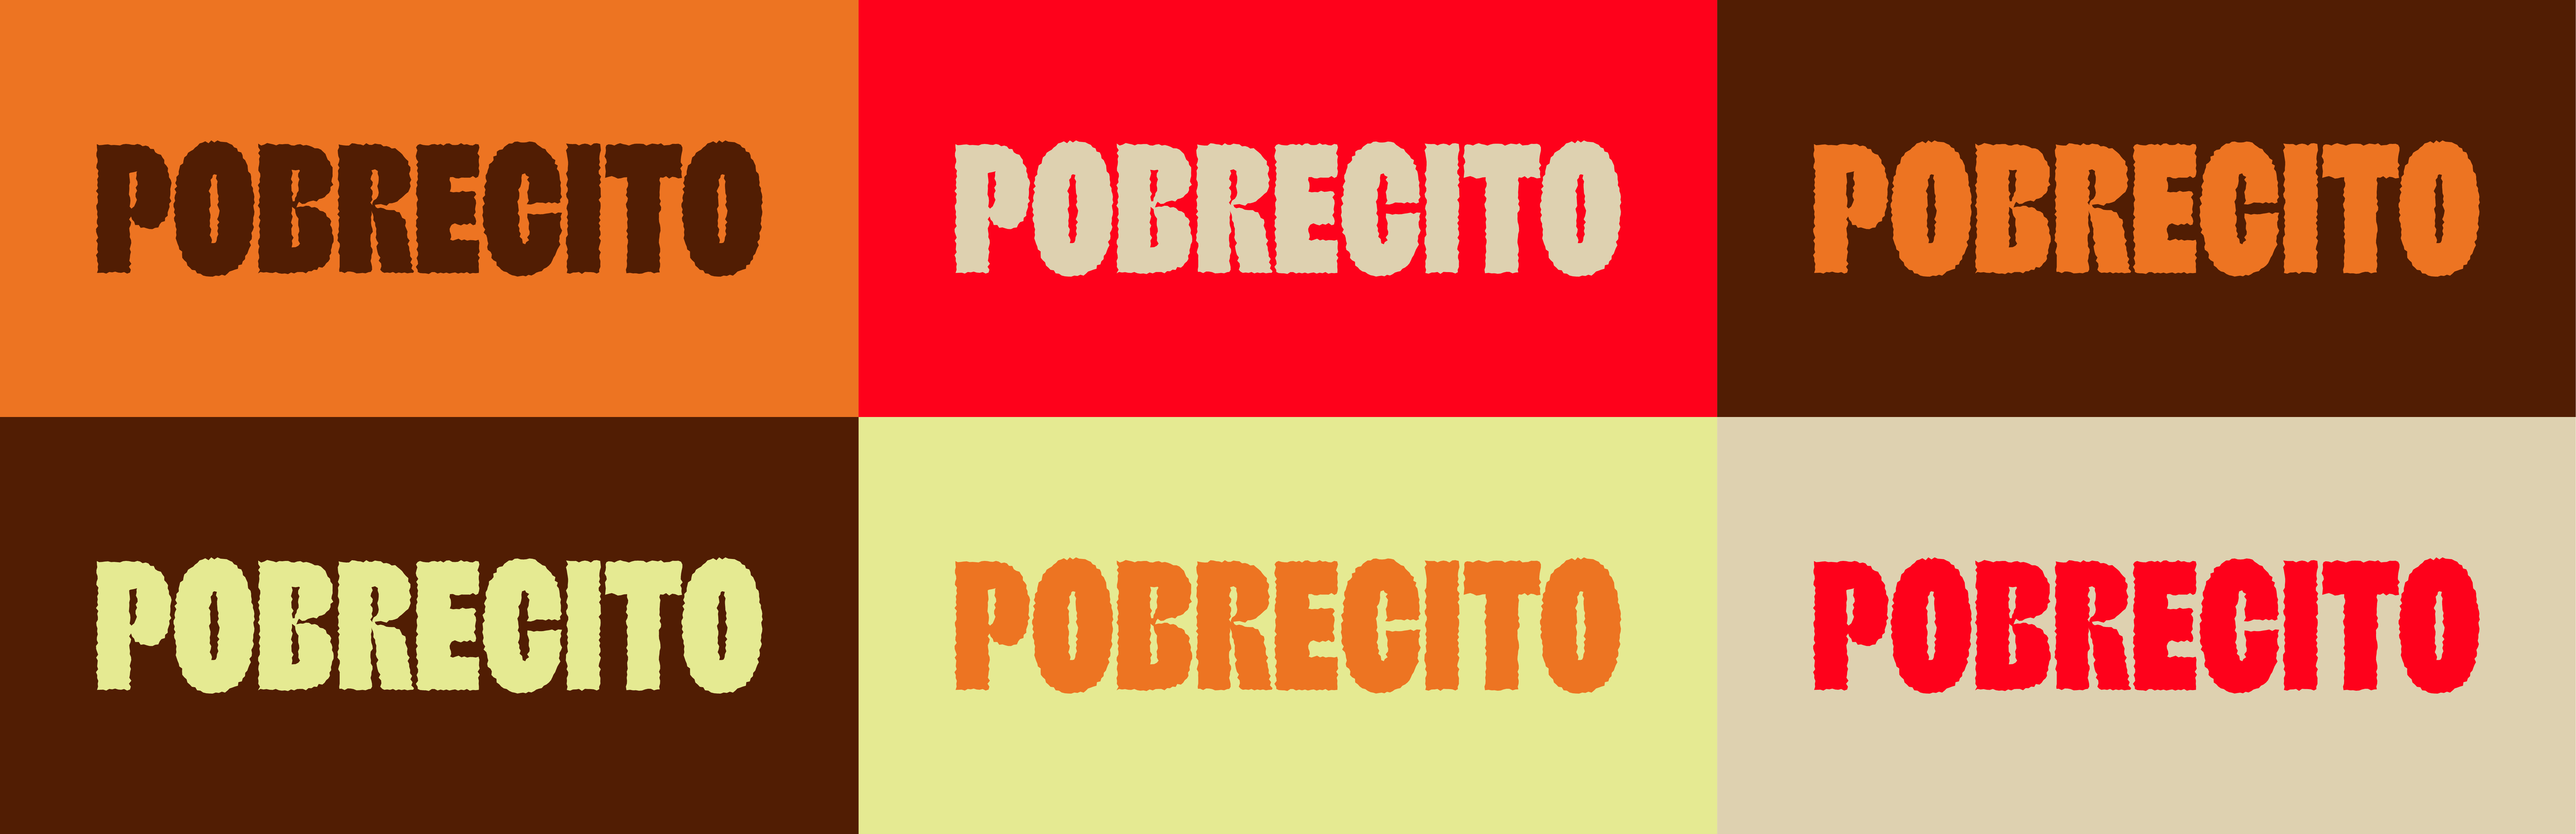 Pobrecito_Main Color Variations.png